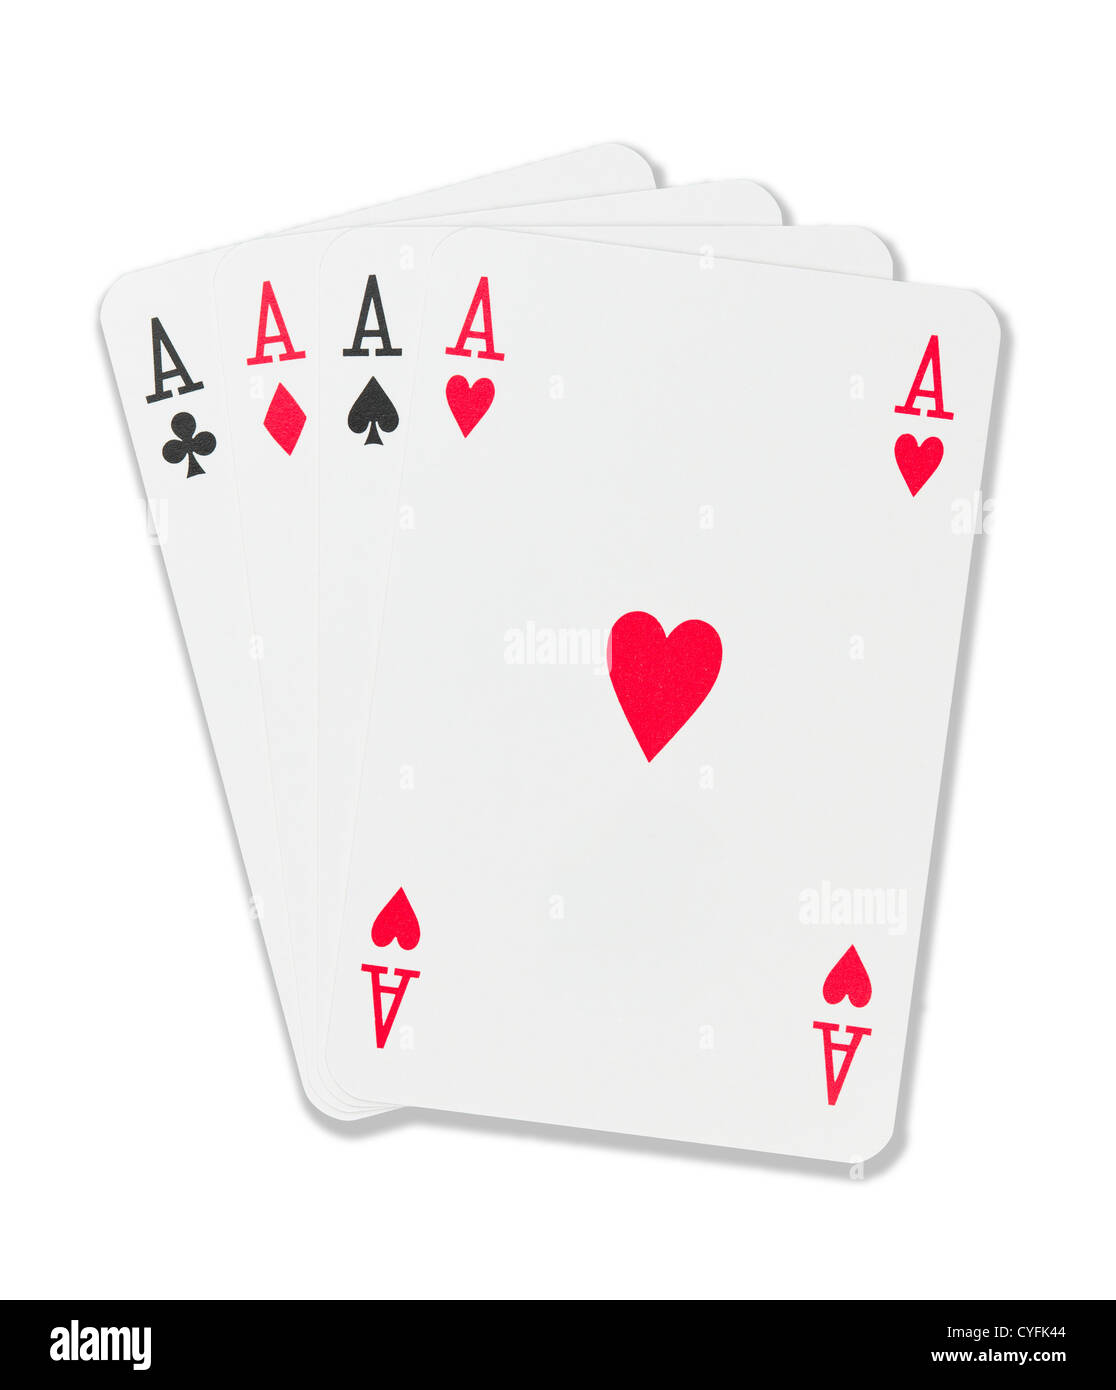 Juego de cartas de cuatro ases.